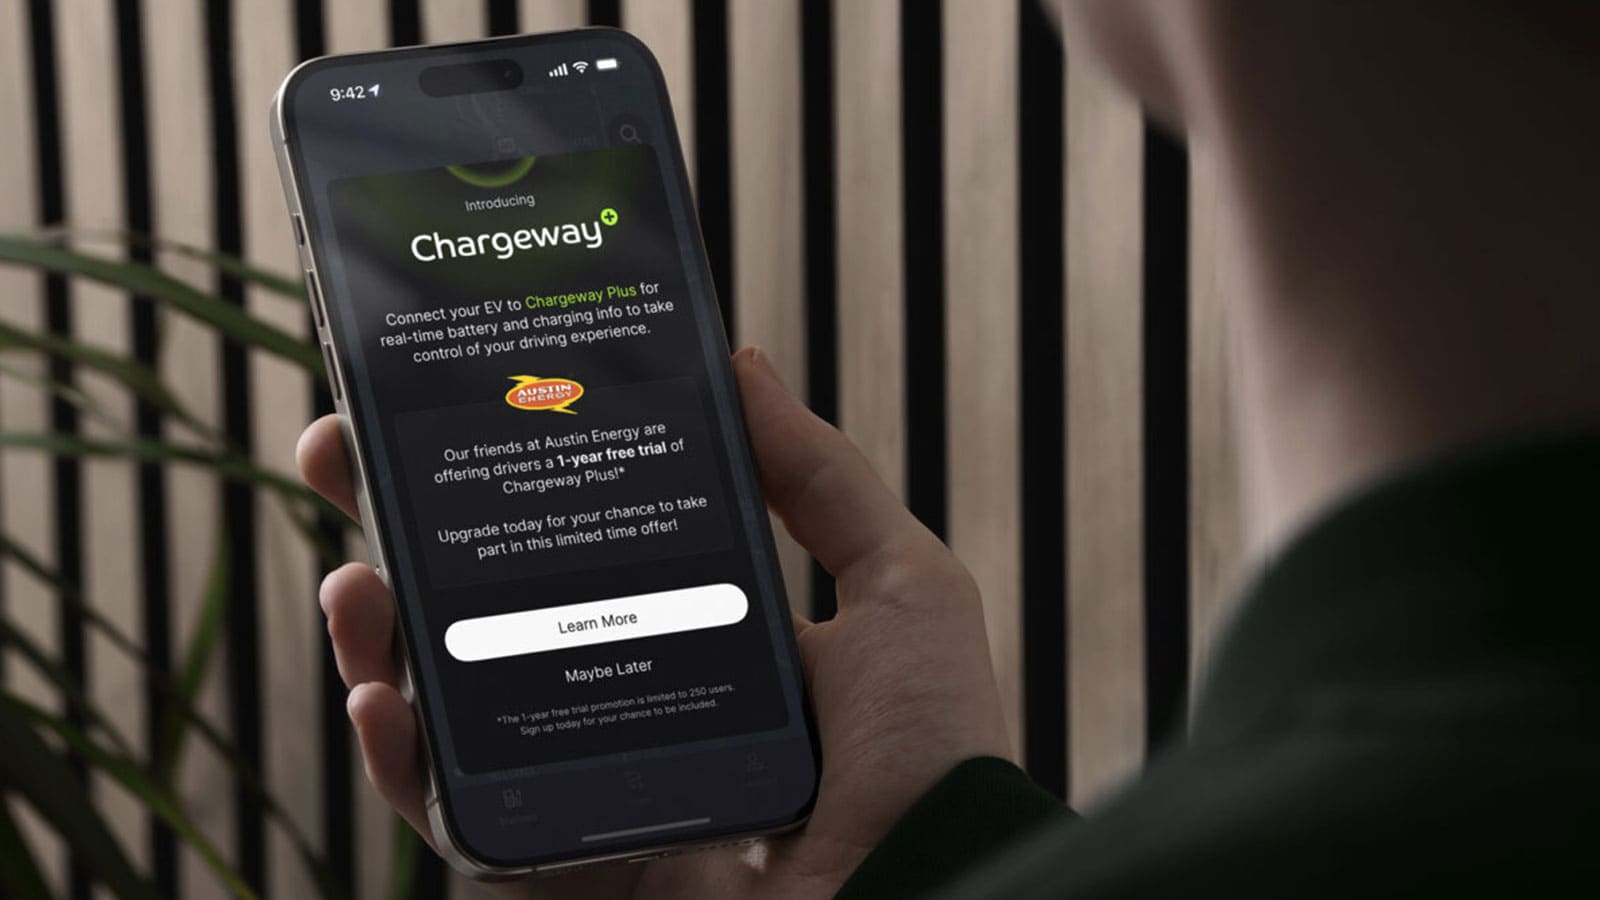 Chargeway Plus app displayed on phone while being held